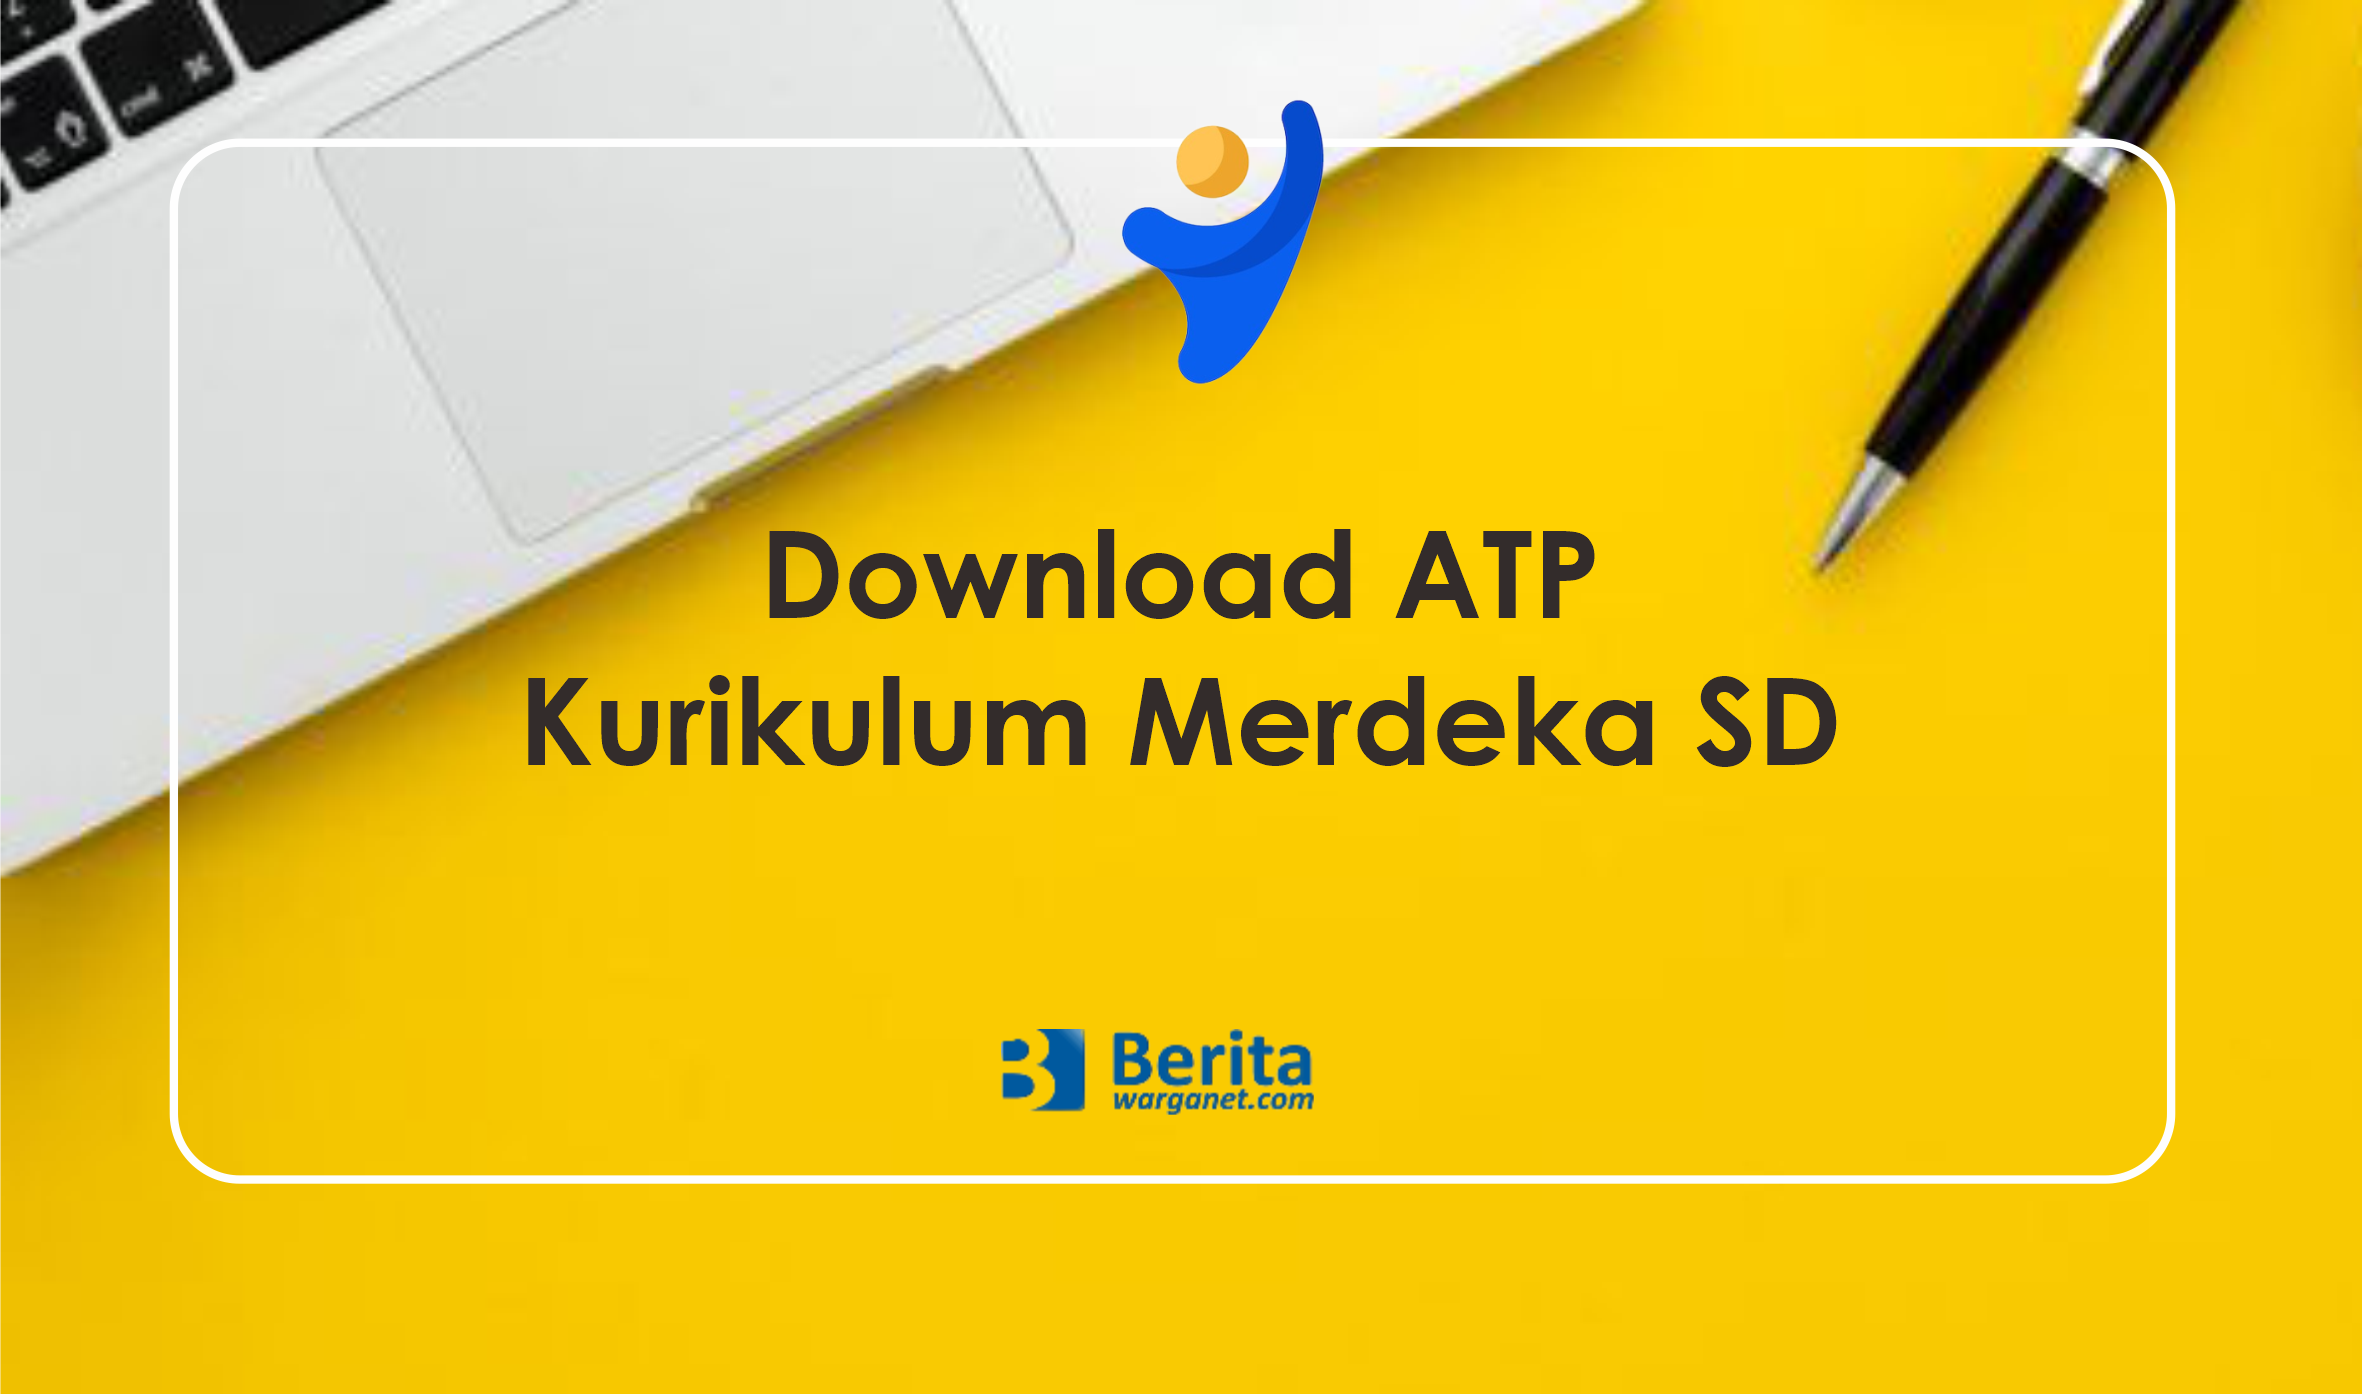 Download ATP Kurikulum Merdeka SD